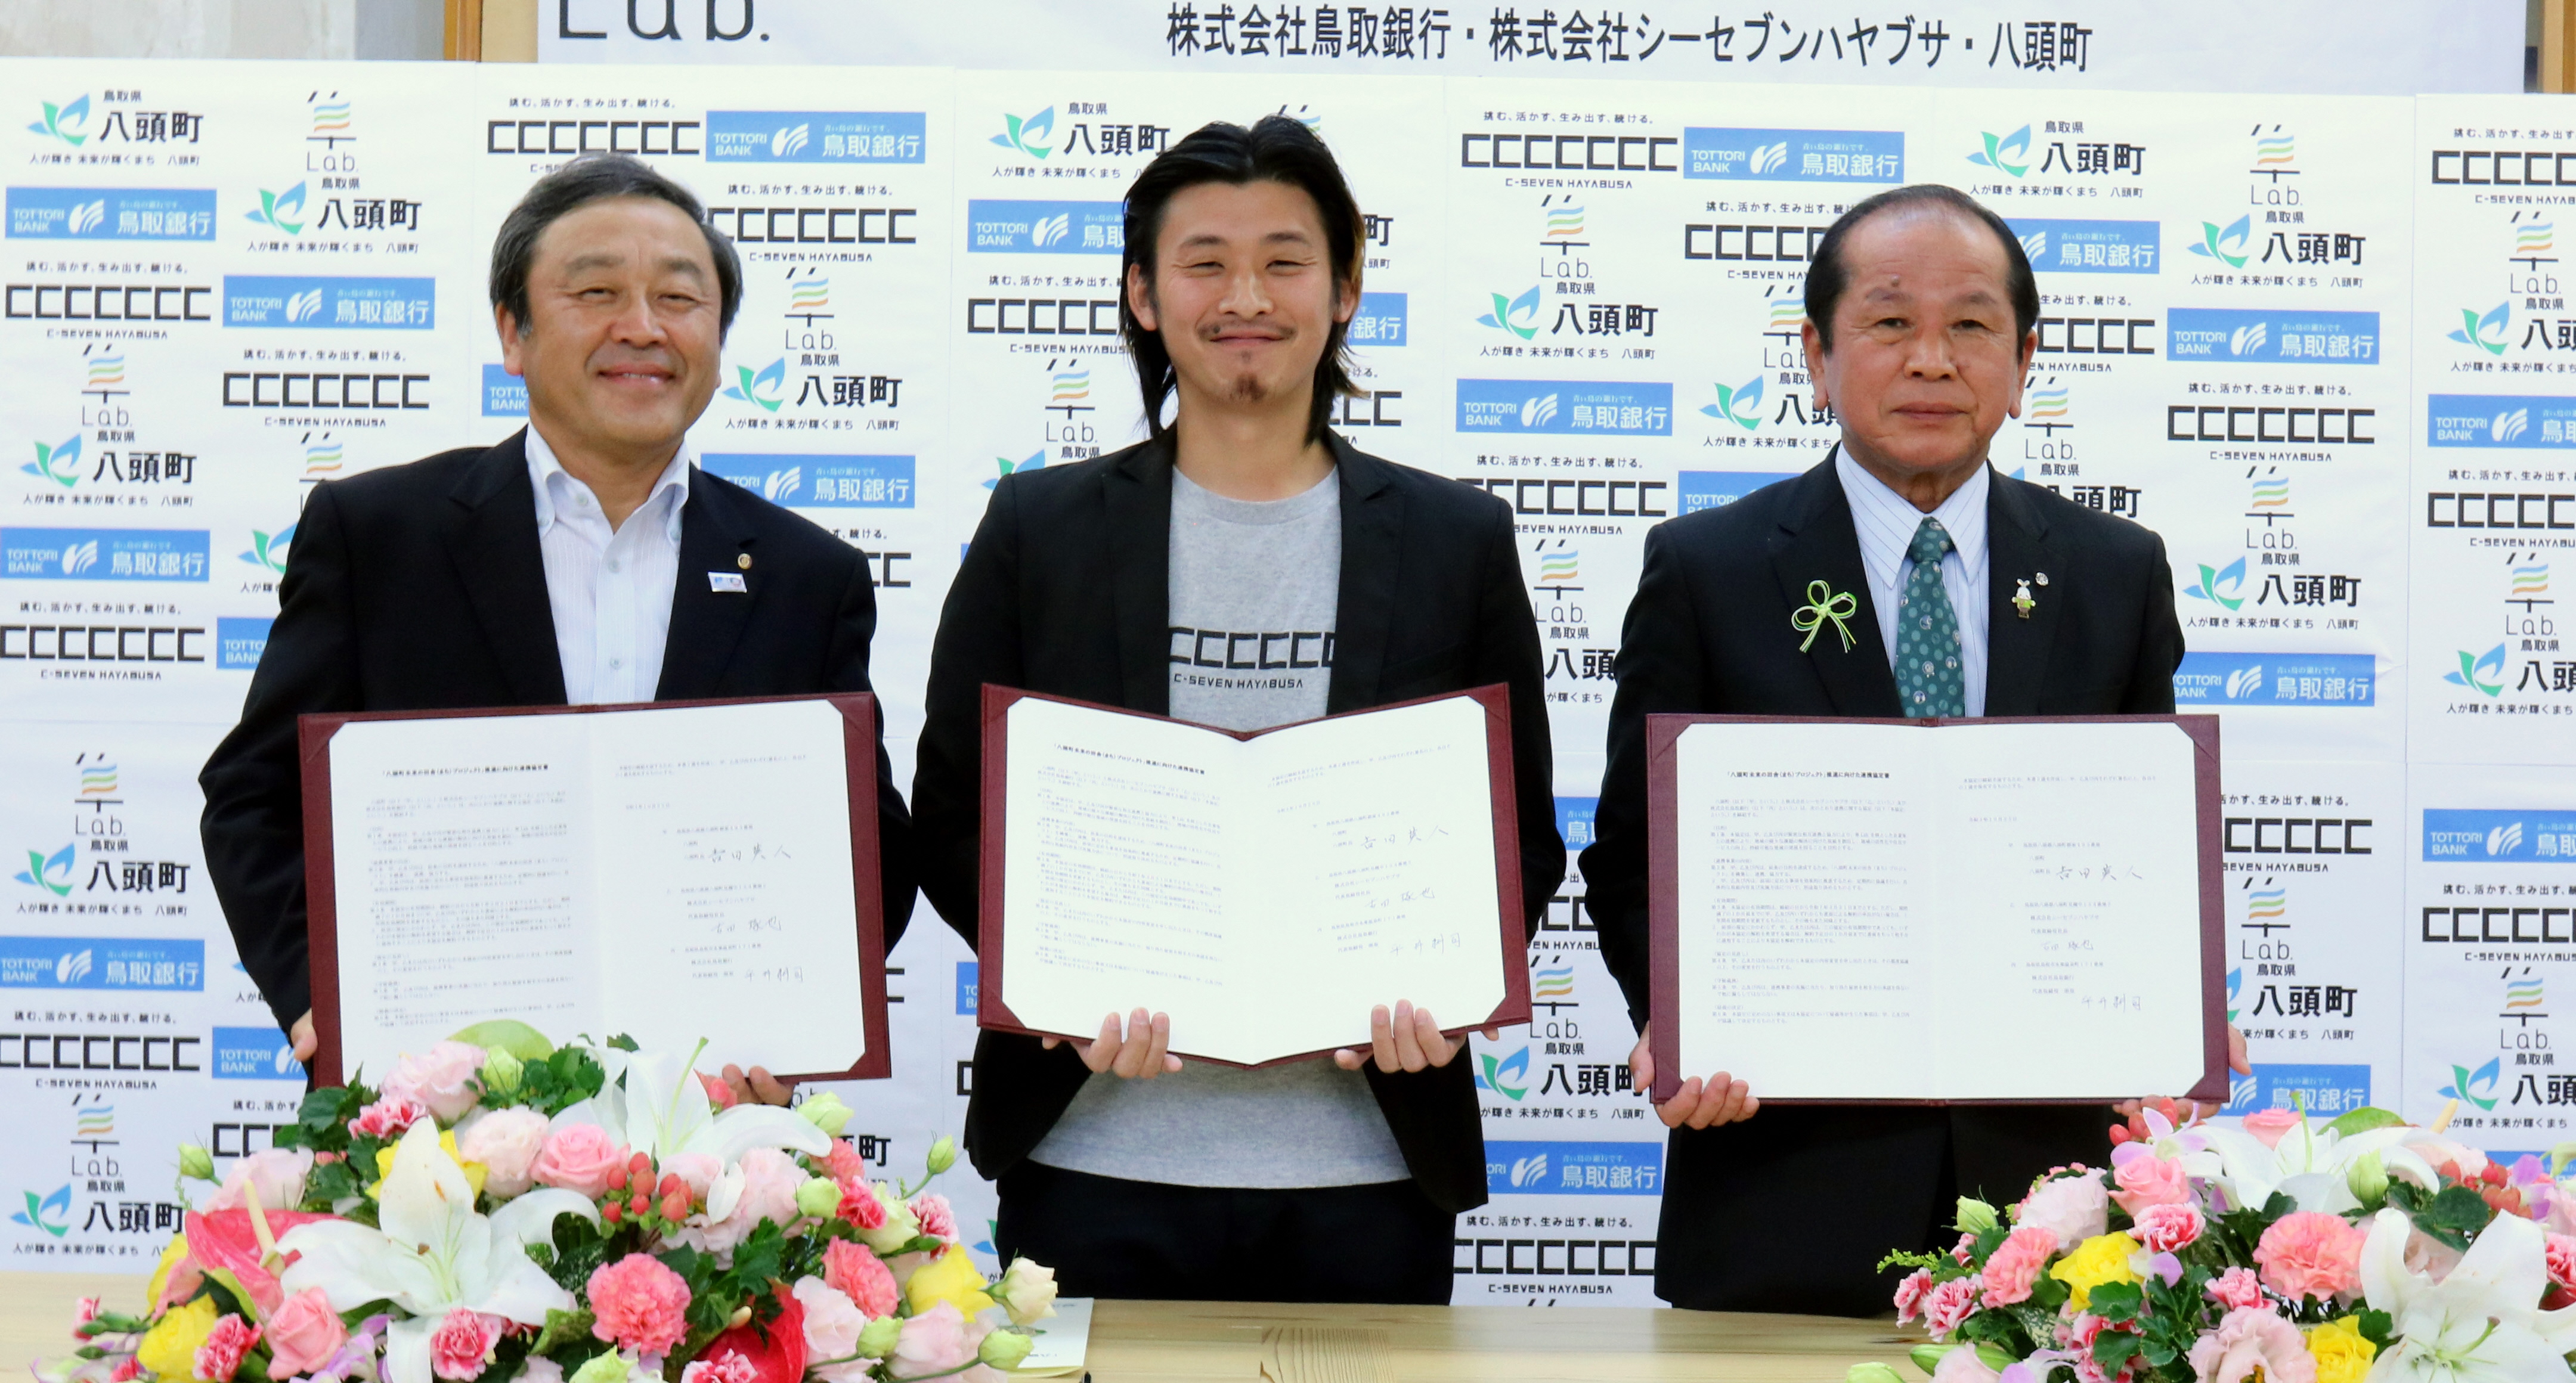 締結式で協定書を掲げる平井頭取、古田社長および吉田町長の写真